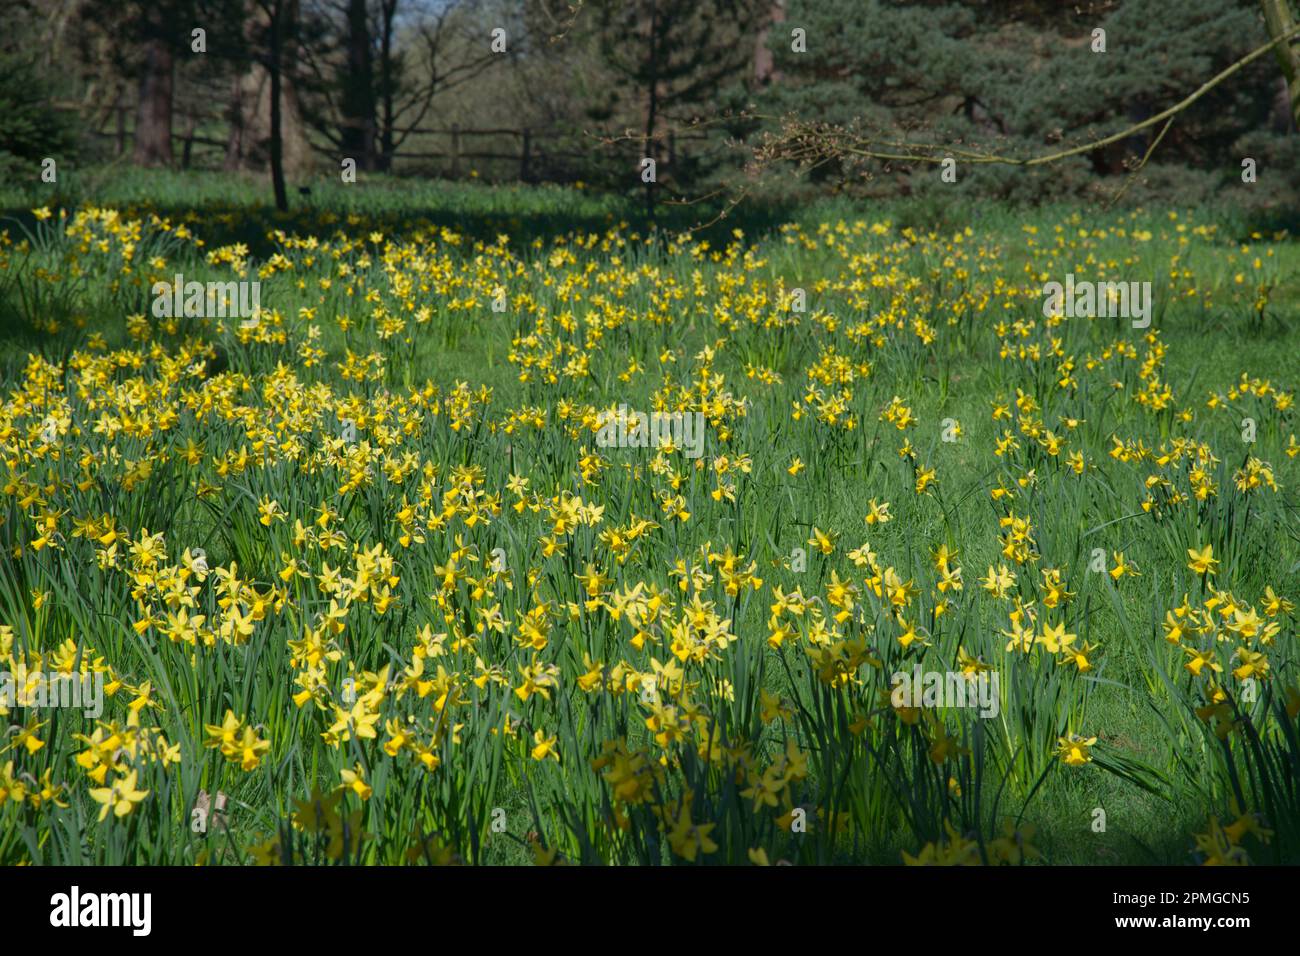 Fleurs de printemps jaune vif de narcisse nains de jonquilles février Or naturalisé dans l'herbe dans le jardin britannique avril Banque D'Images